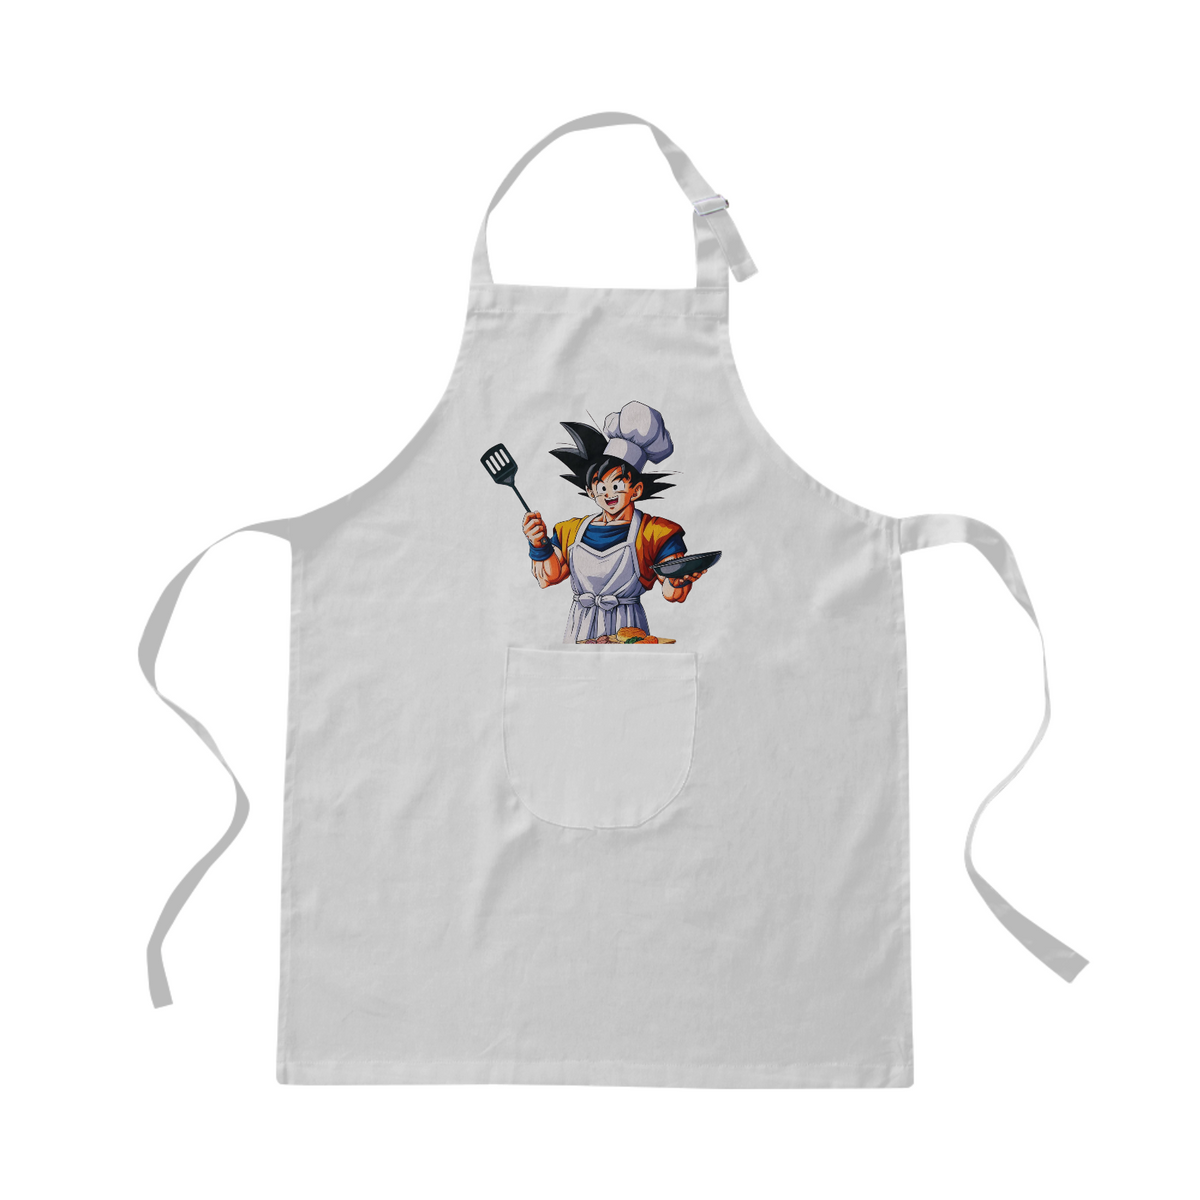 Nome do produto: Avental Goku cozinheiro 0016